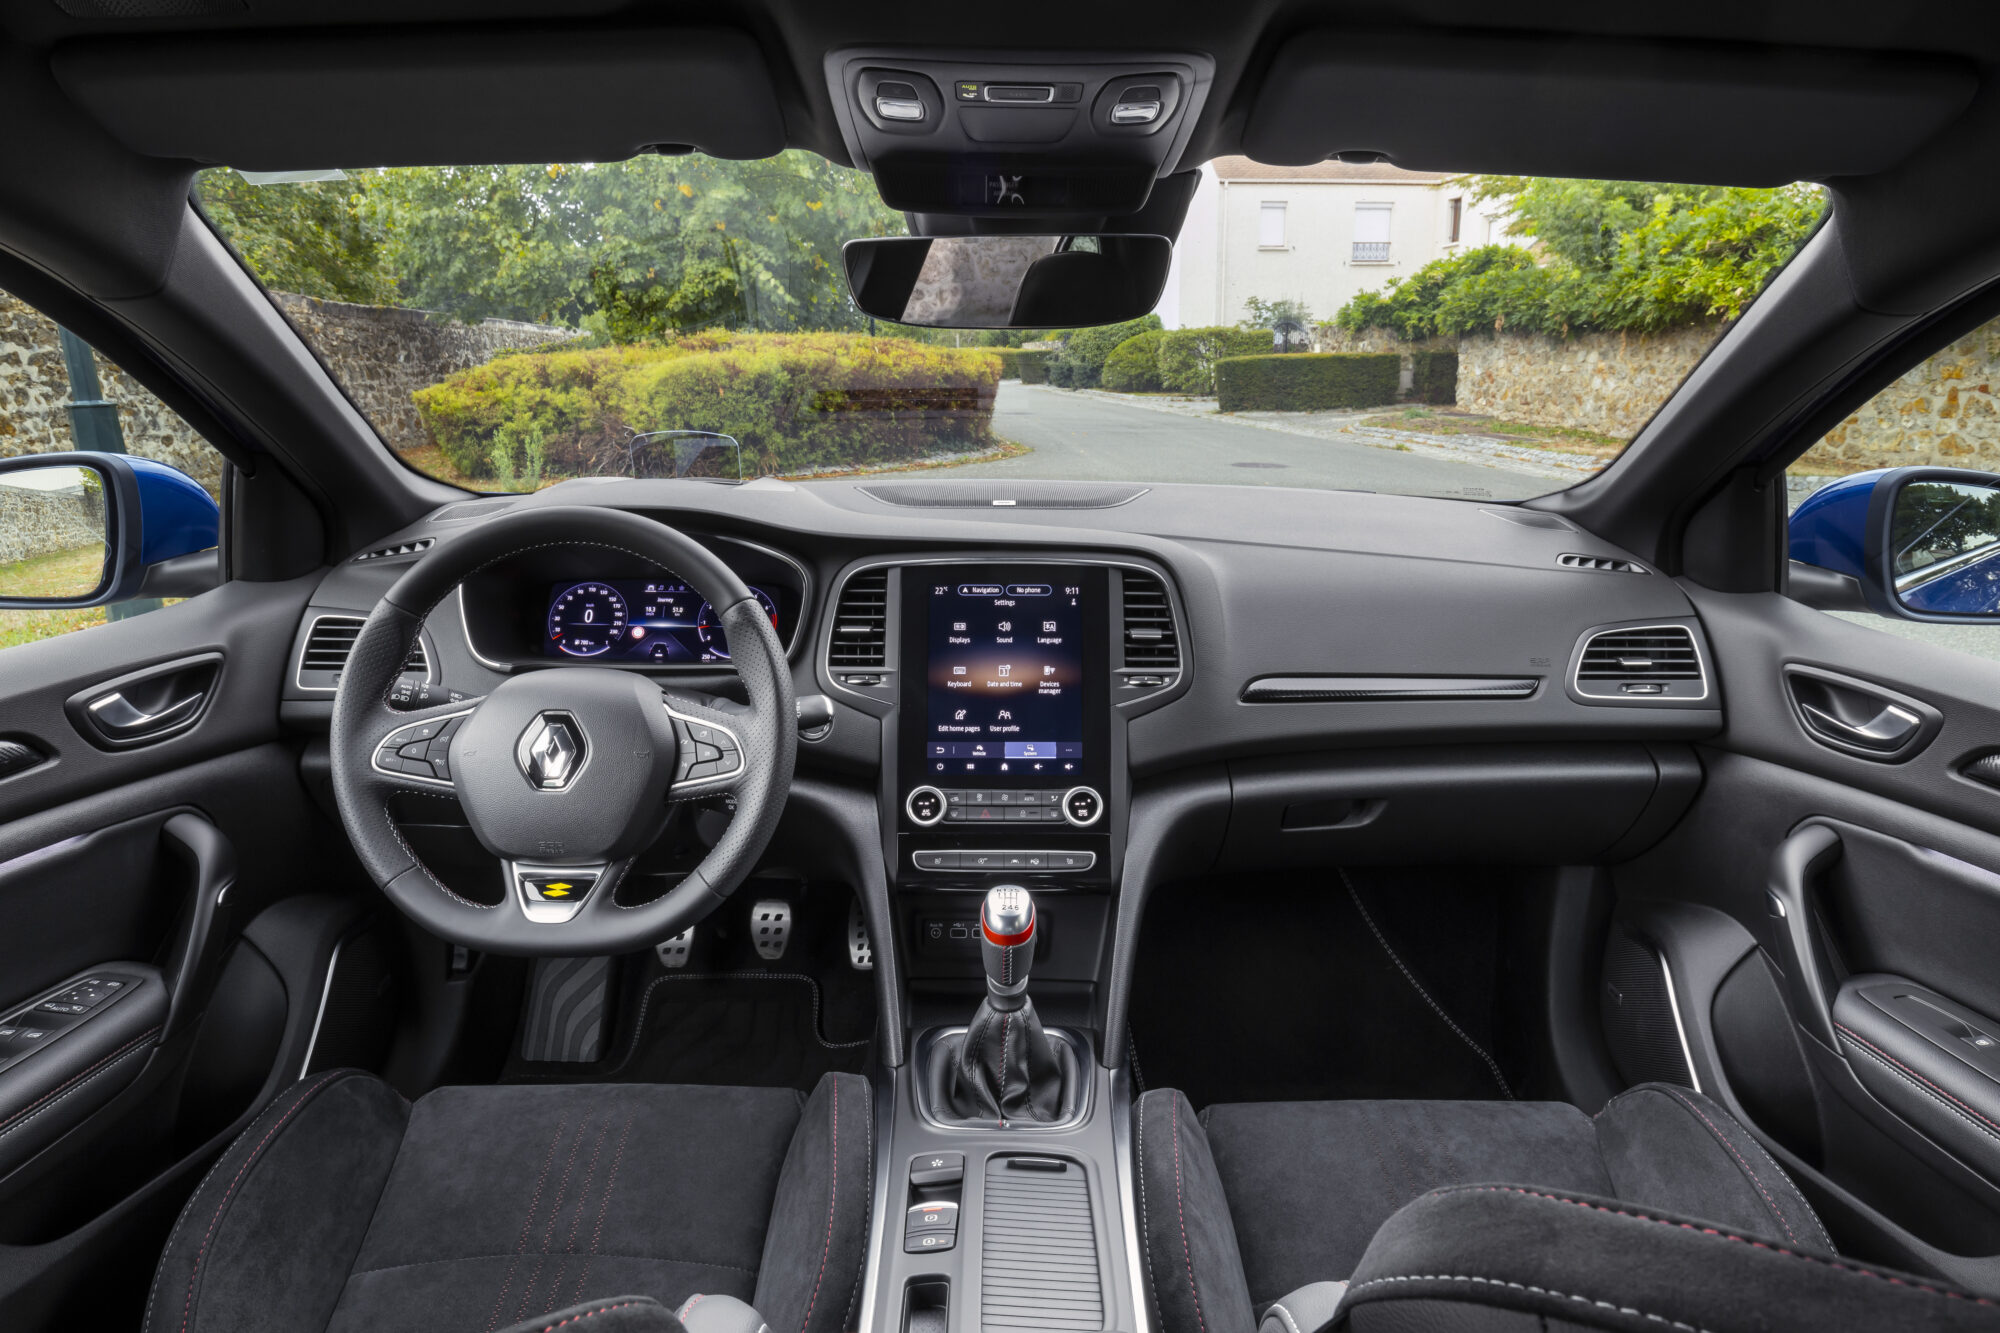 2020 - All New Renault MEGANE Hatchback R.S. Line - Test drives